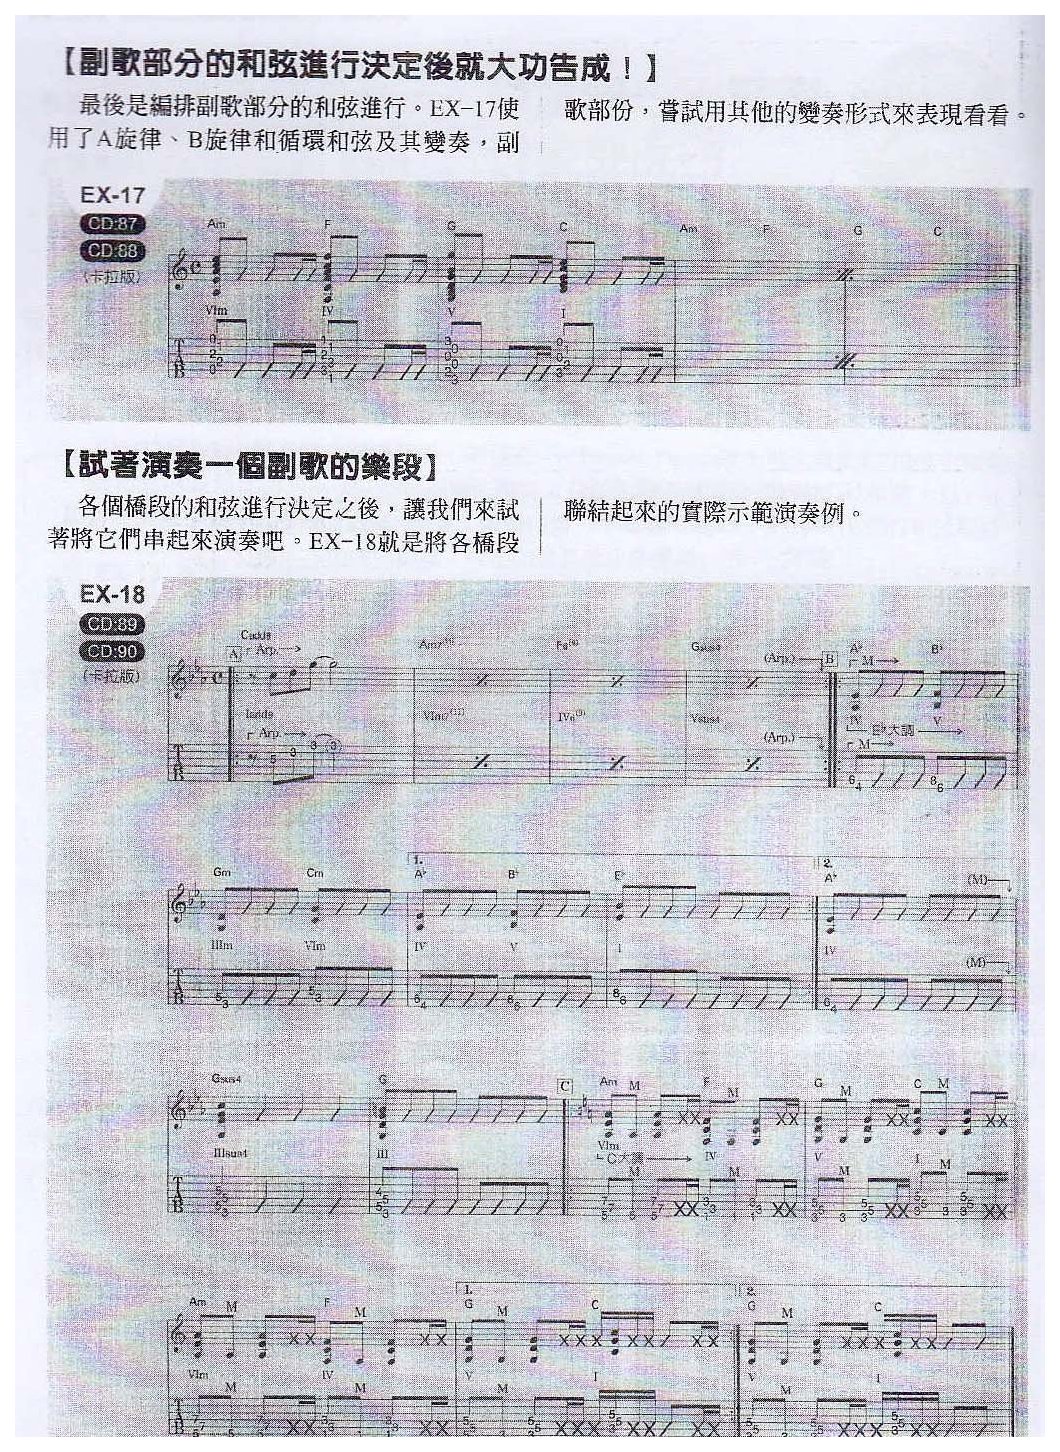 电吉他实践和弦进的独门密法《编写出一个副歌的和弦进行》